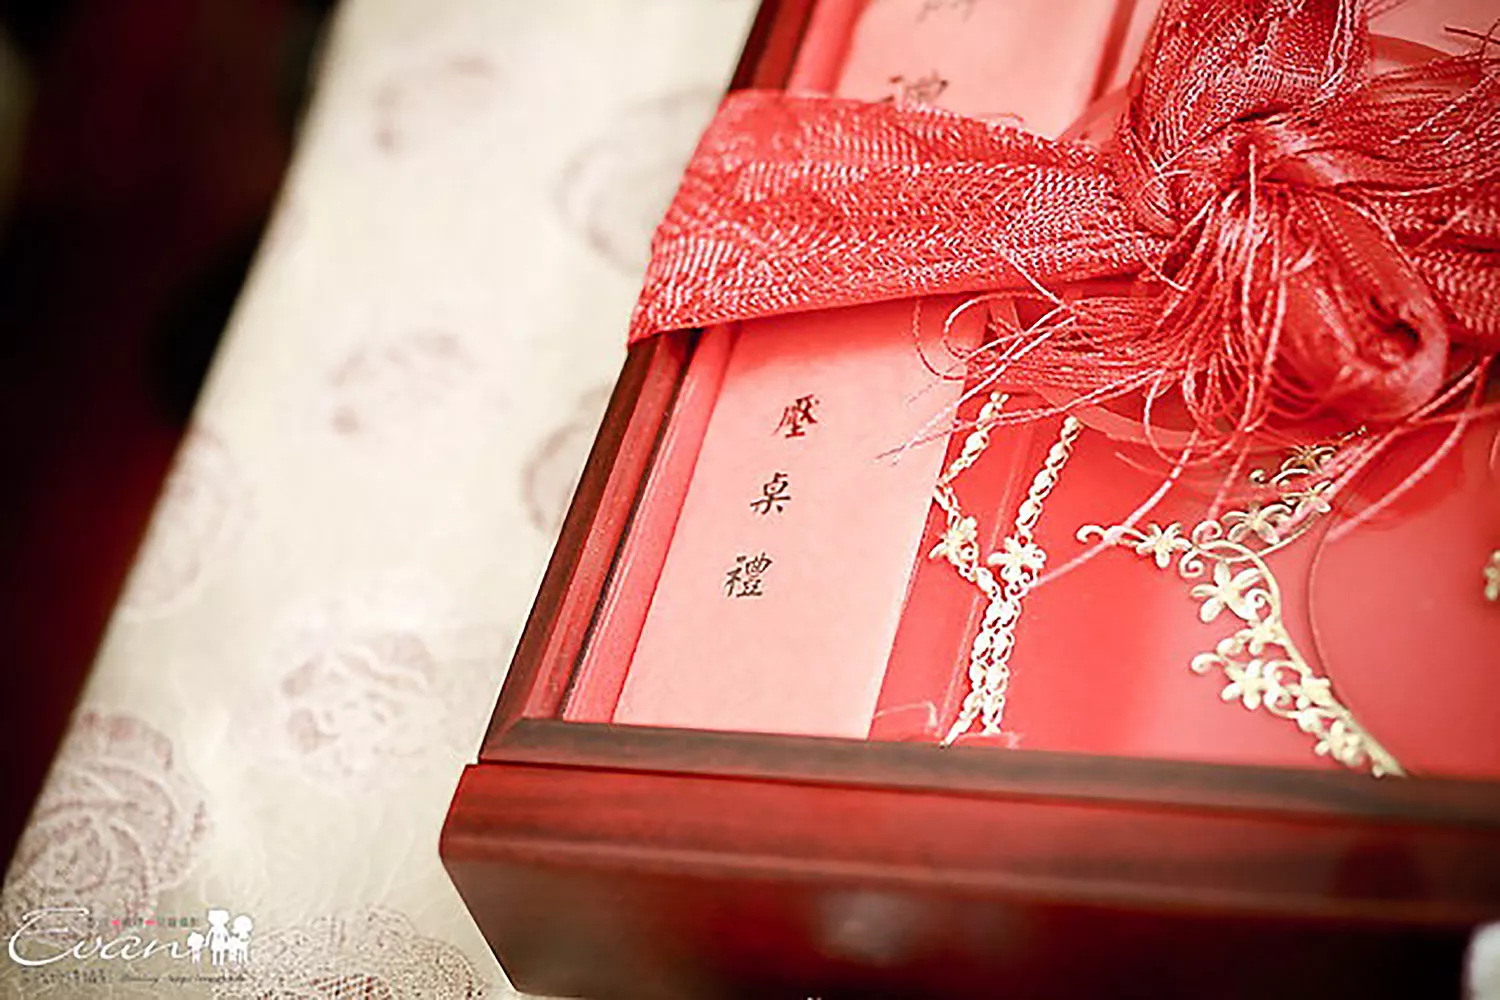 壓桌禮是台灣訂婚婚宴中的一個禮俗。 